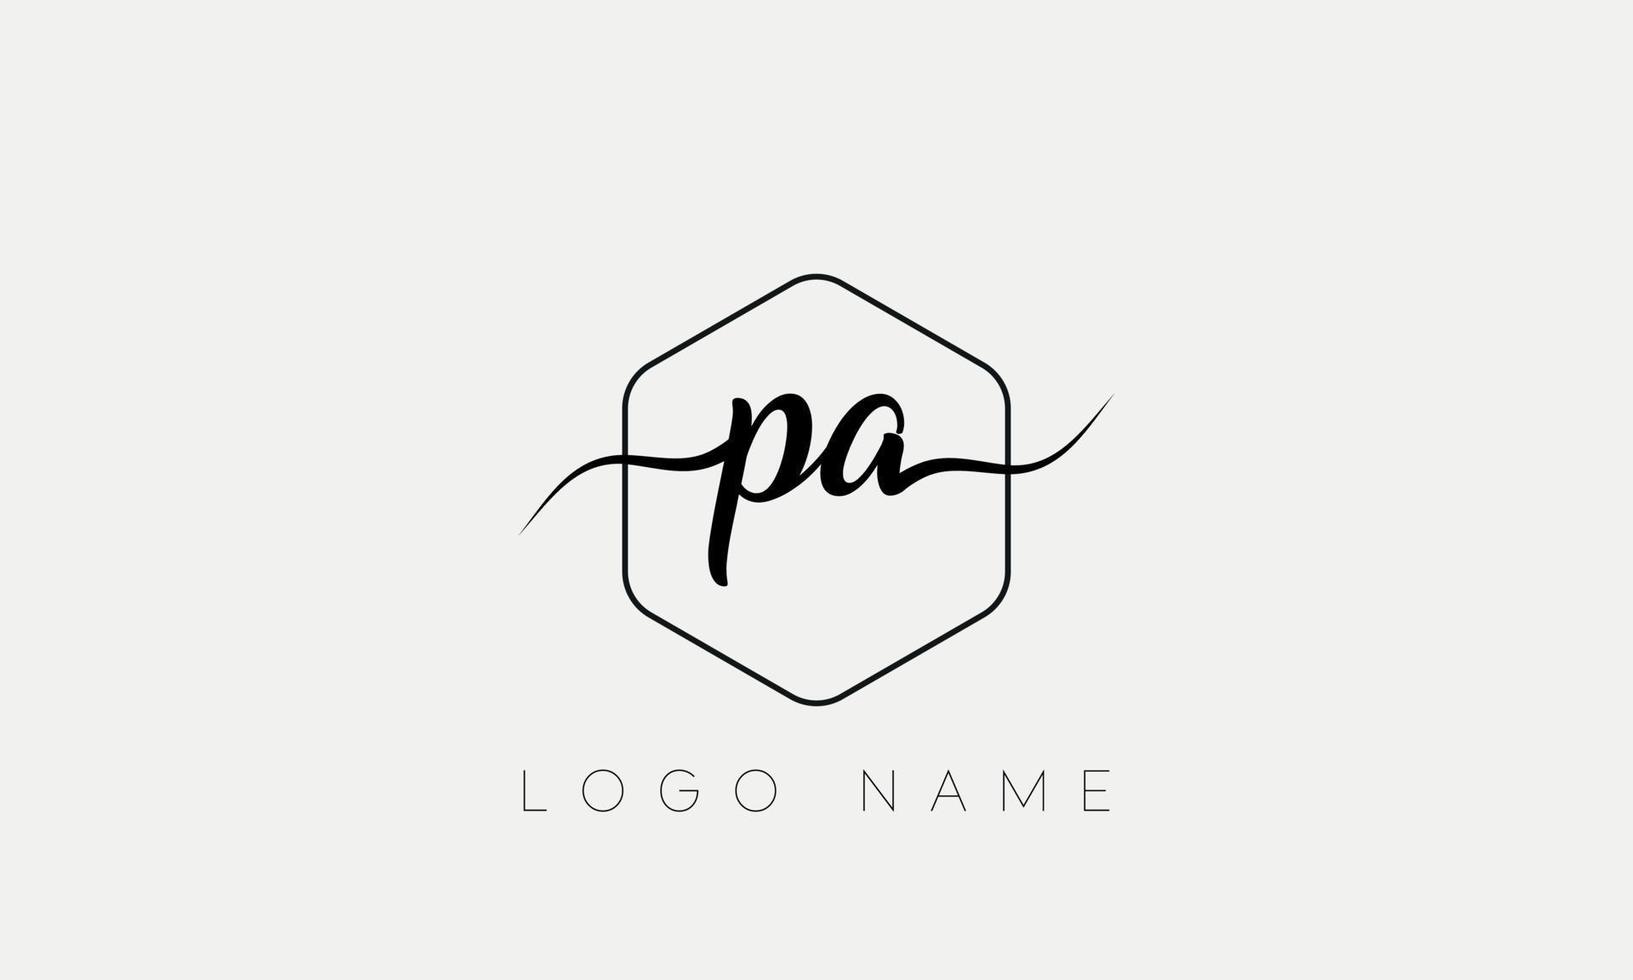 écriture manuscrite lettre pa logo pro fichier vectoriel